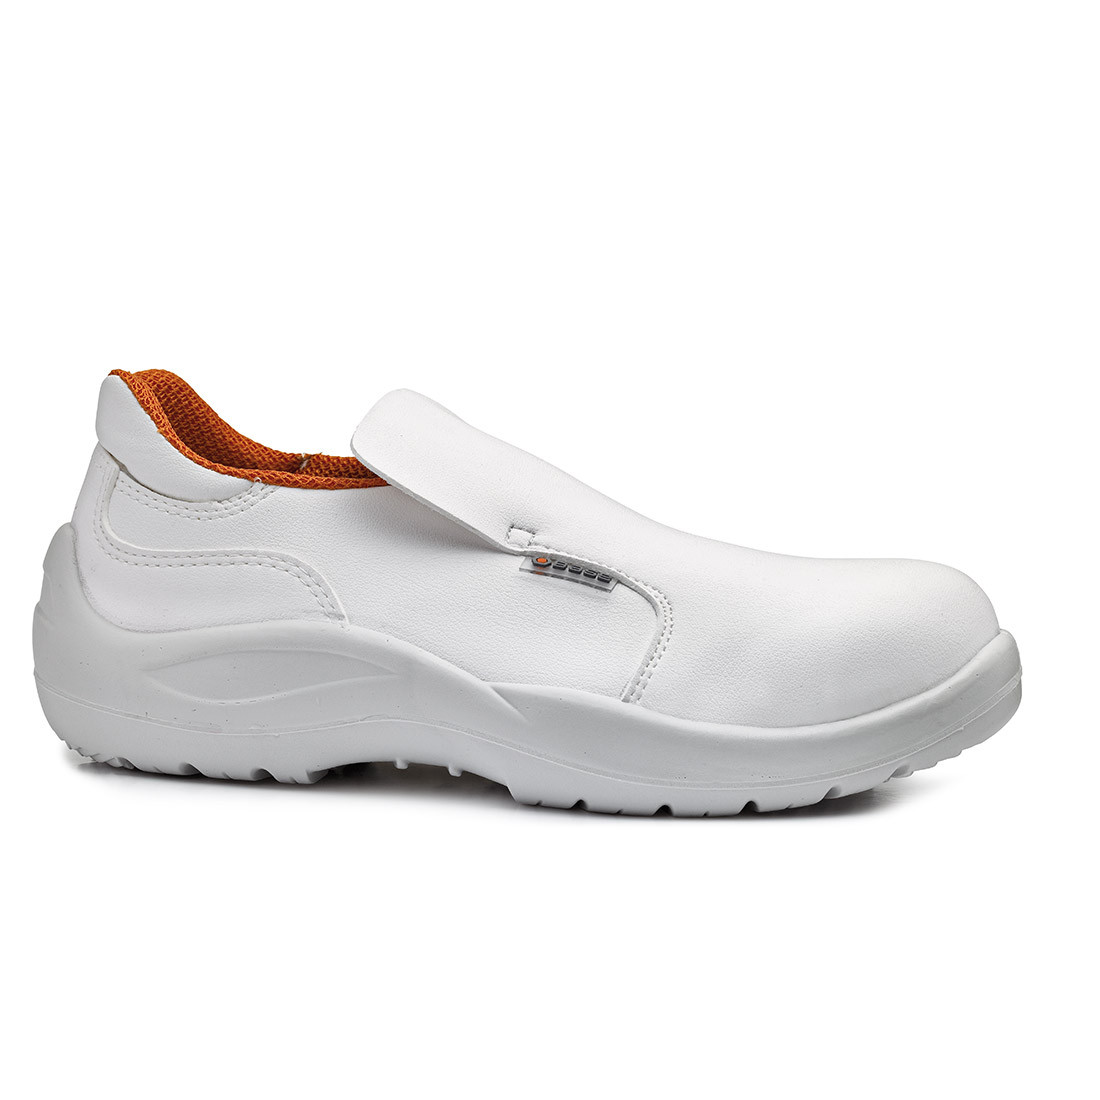 Pantofi Cloro S2 SRC - Incaltaminte de protectie